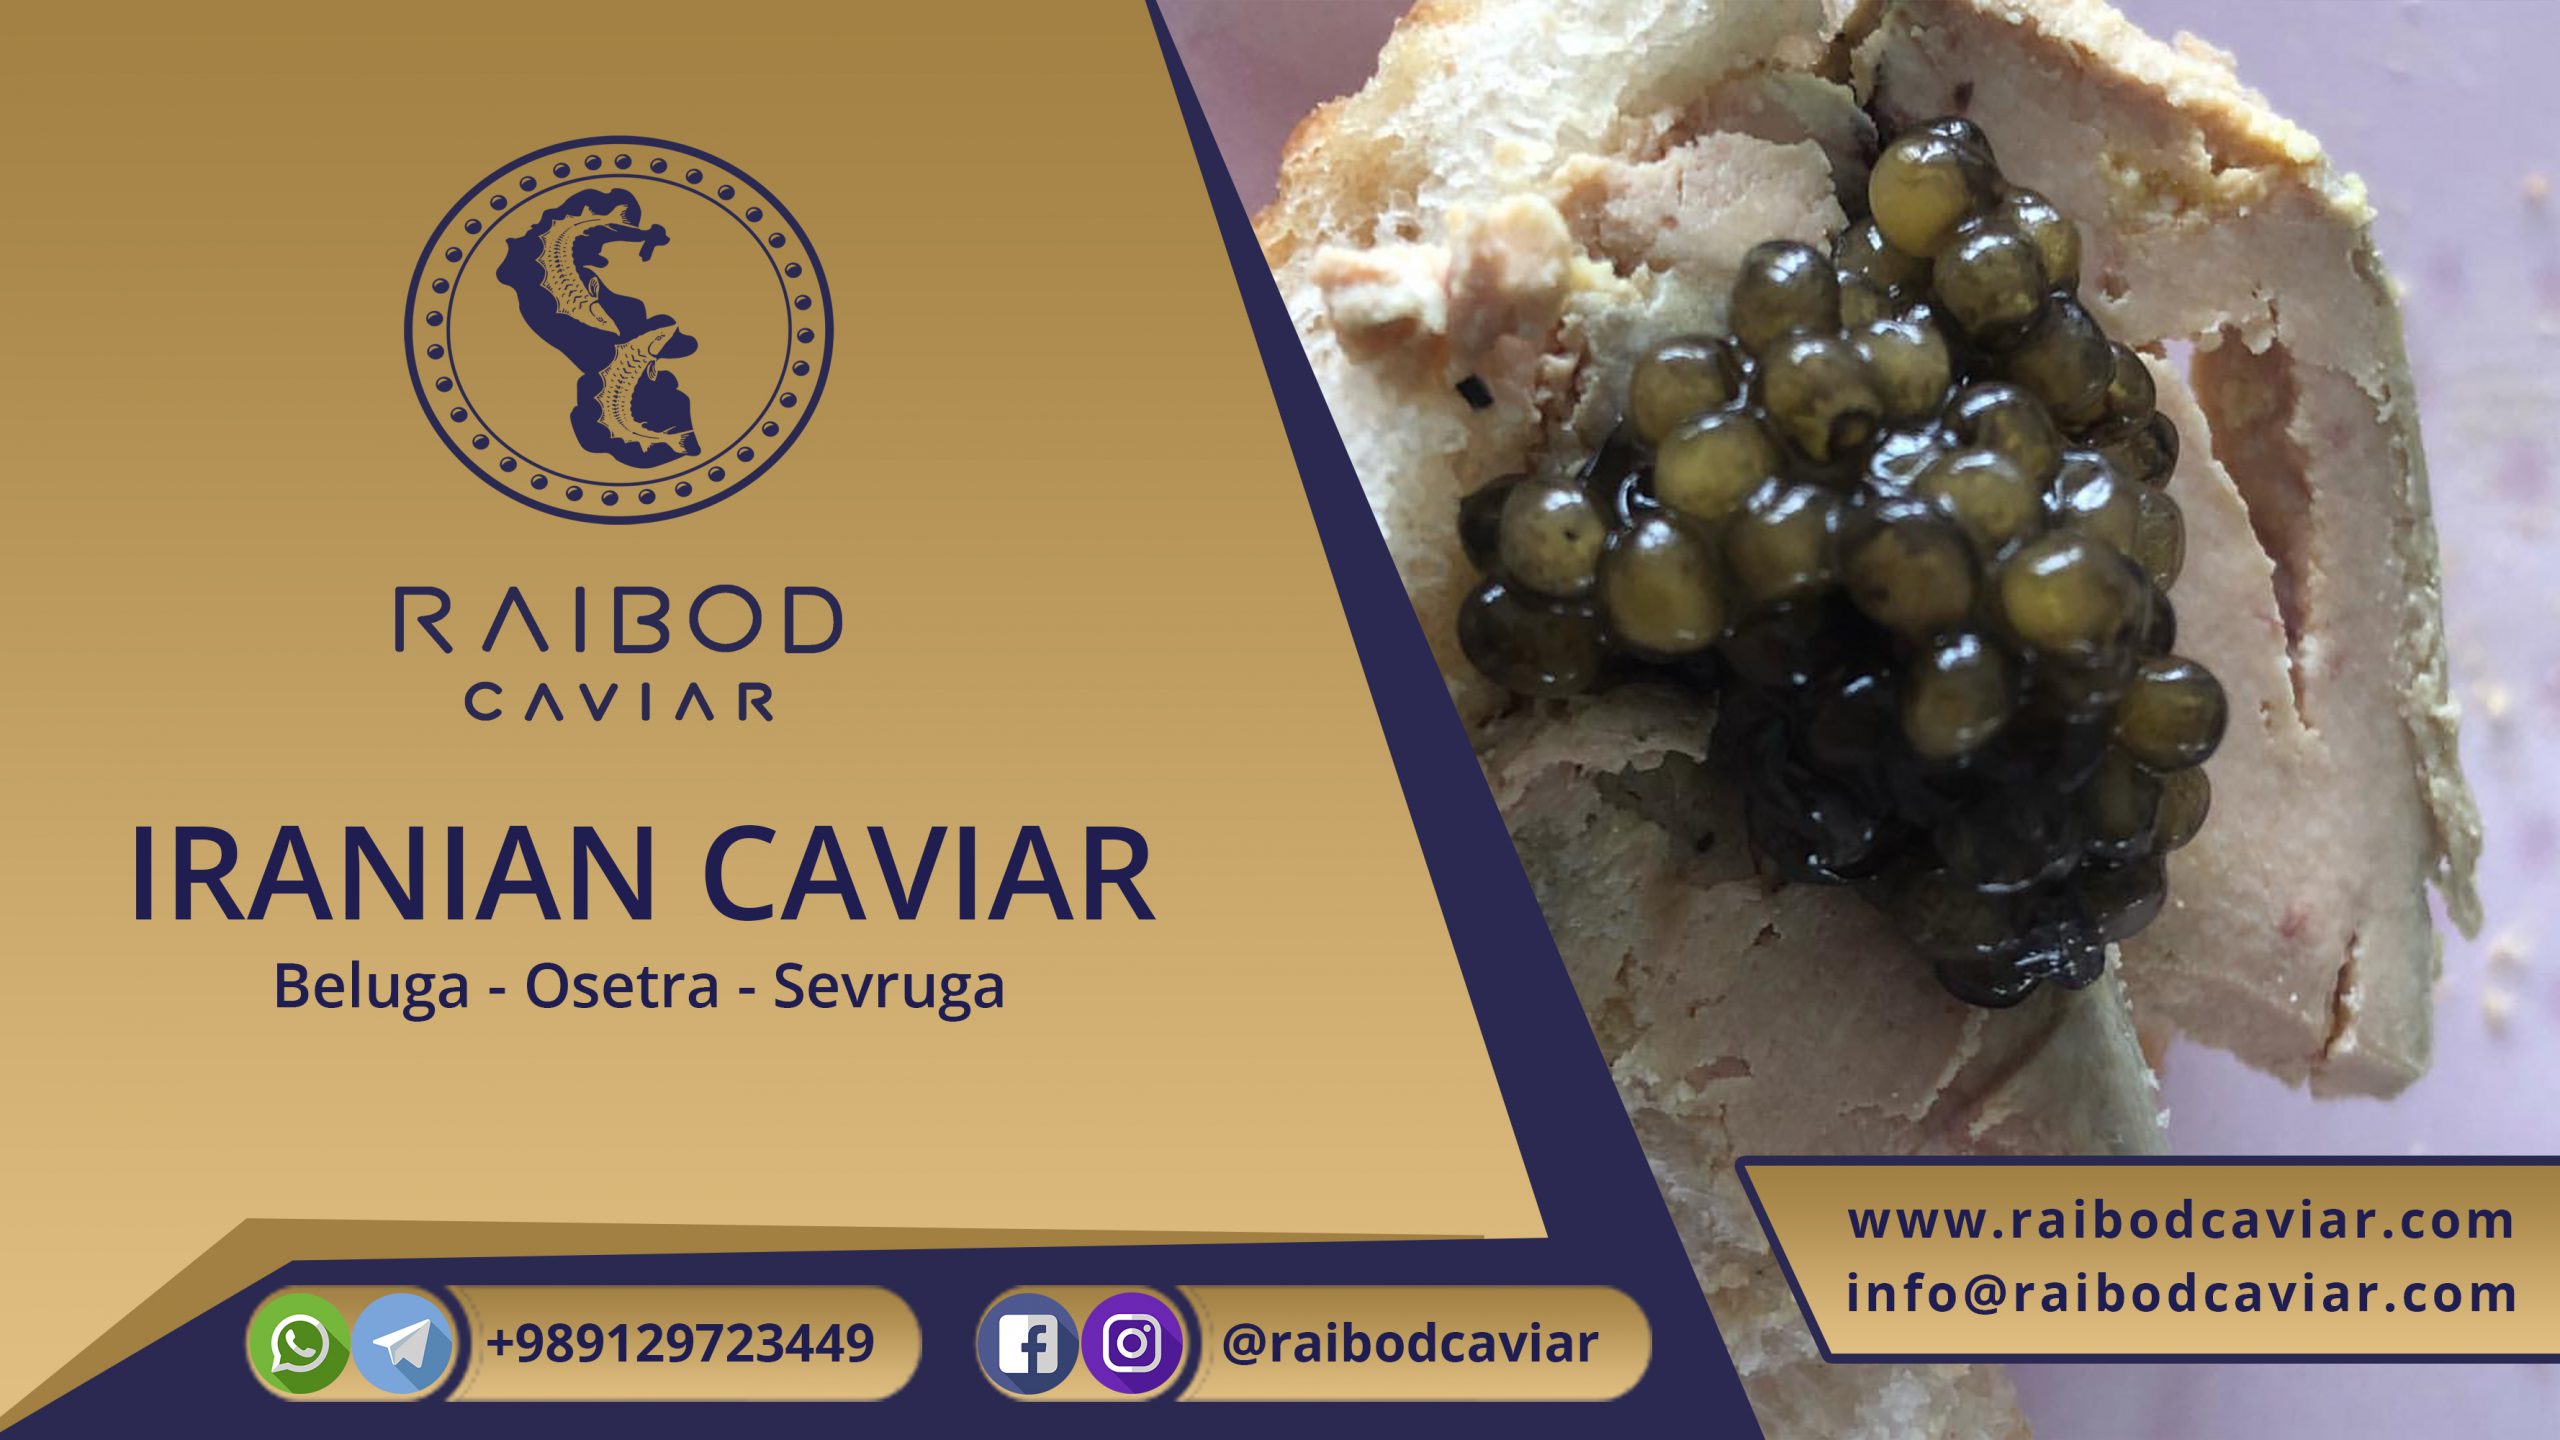 price of original caviar